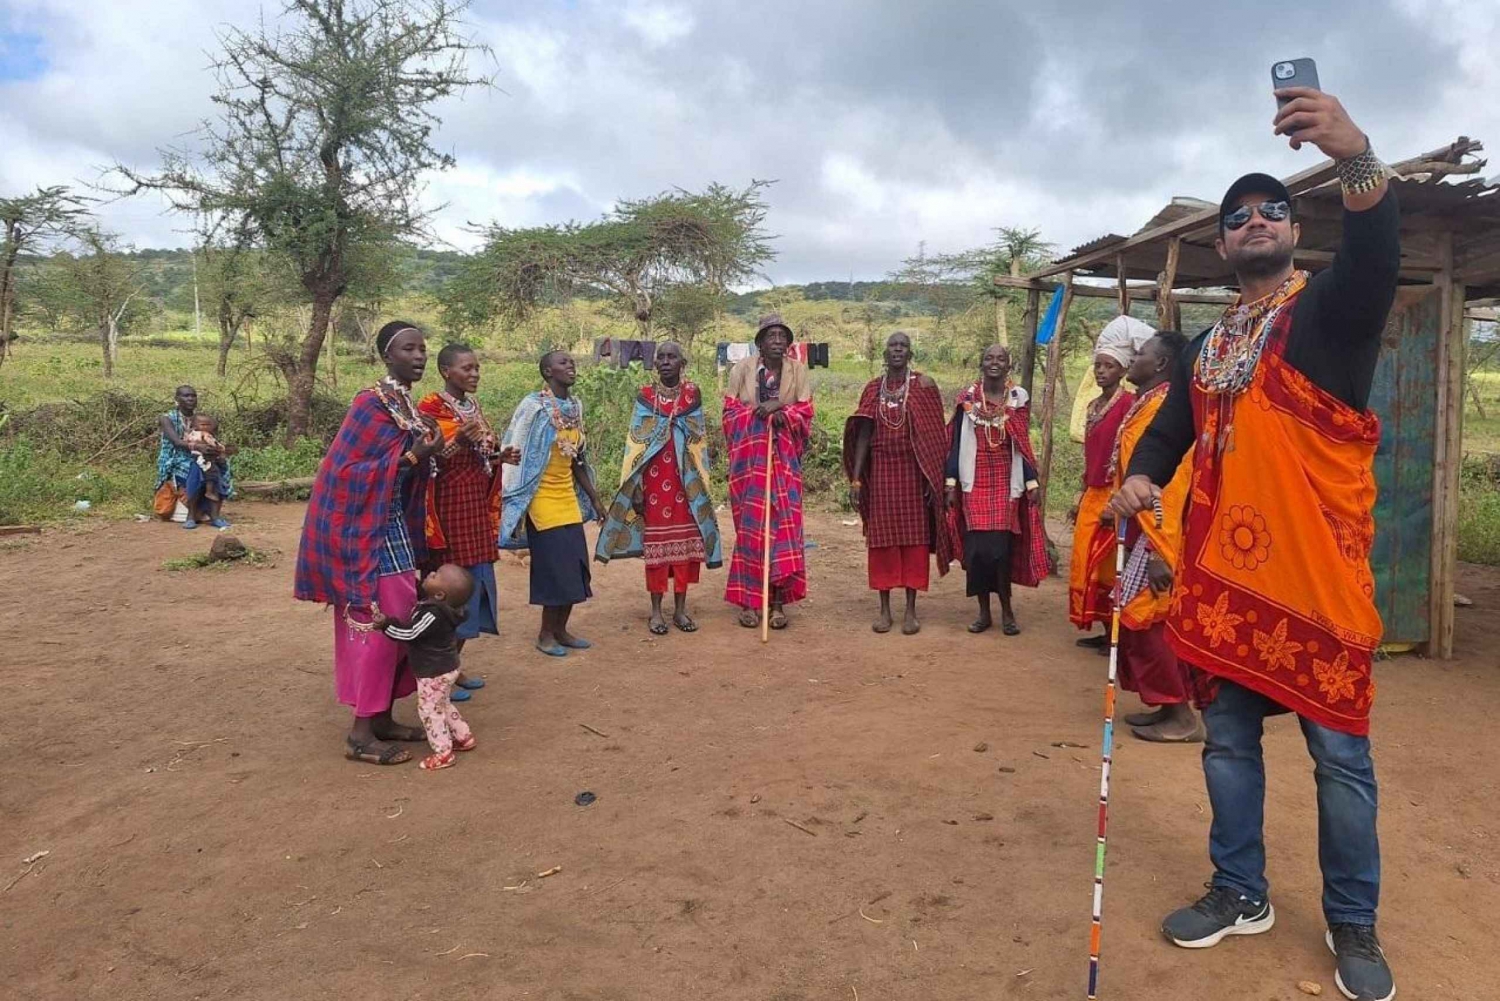 Excursão à vila Maasai saindo de Nairóbi